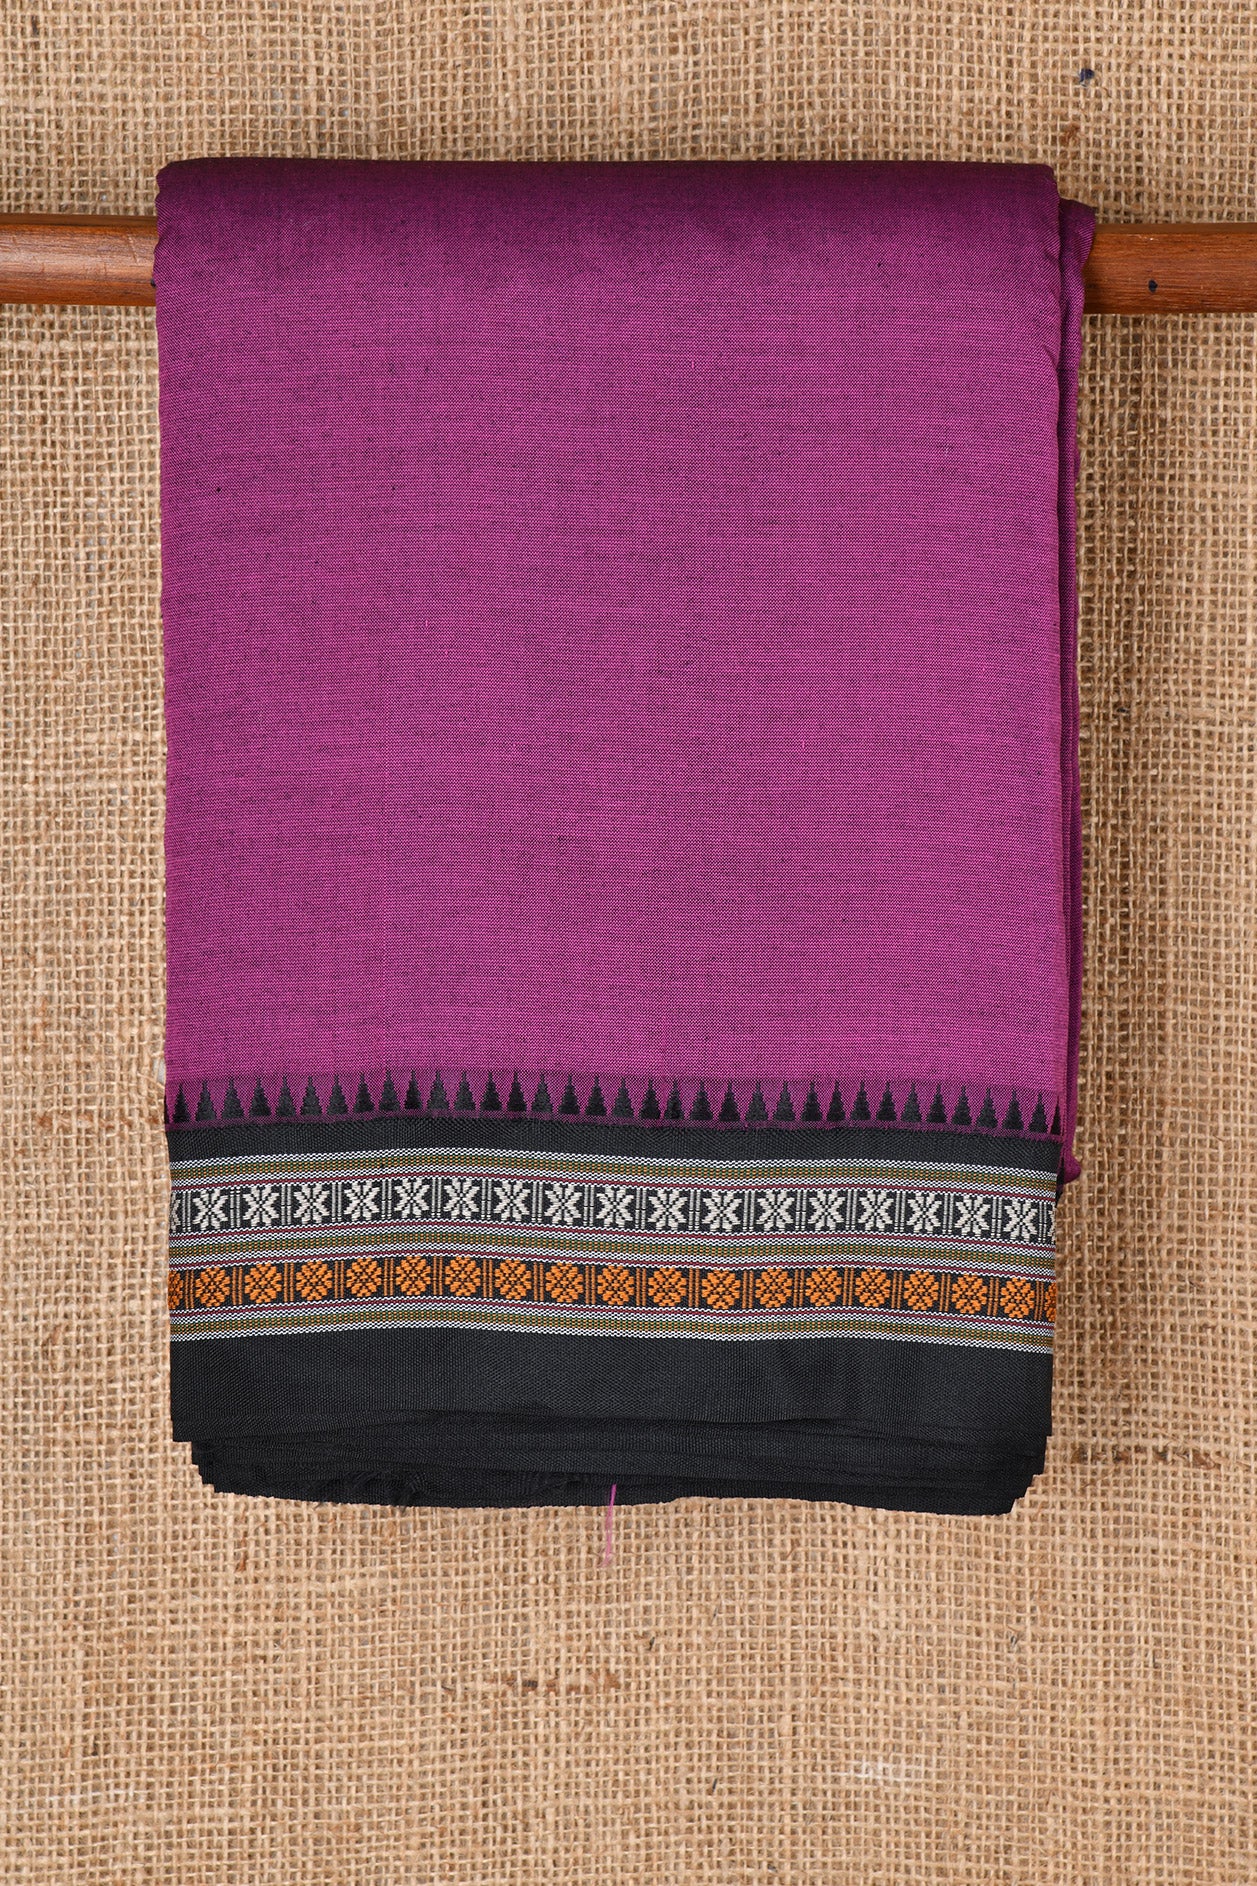 Contrast Rudraksh Running Border With Dark Violet Dharwad Cotton Saree